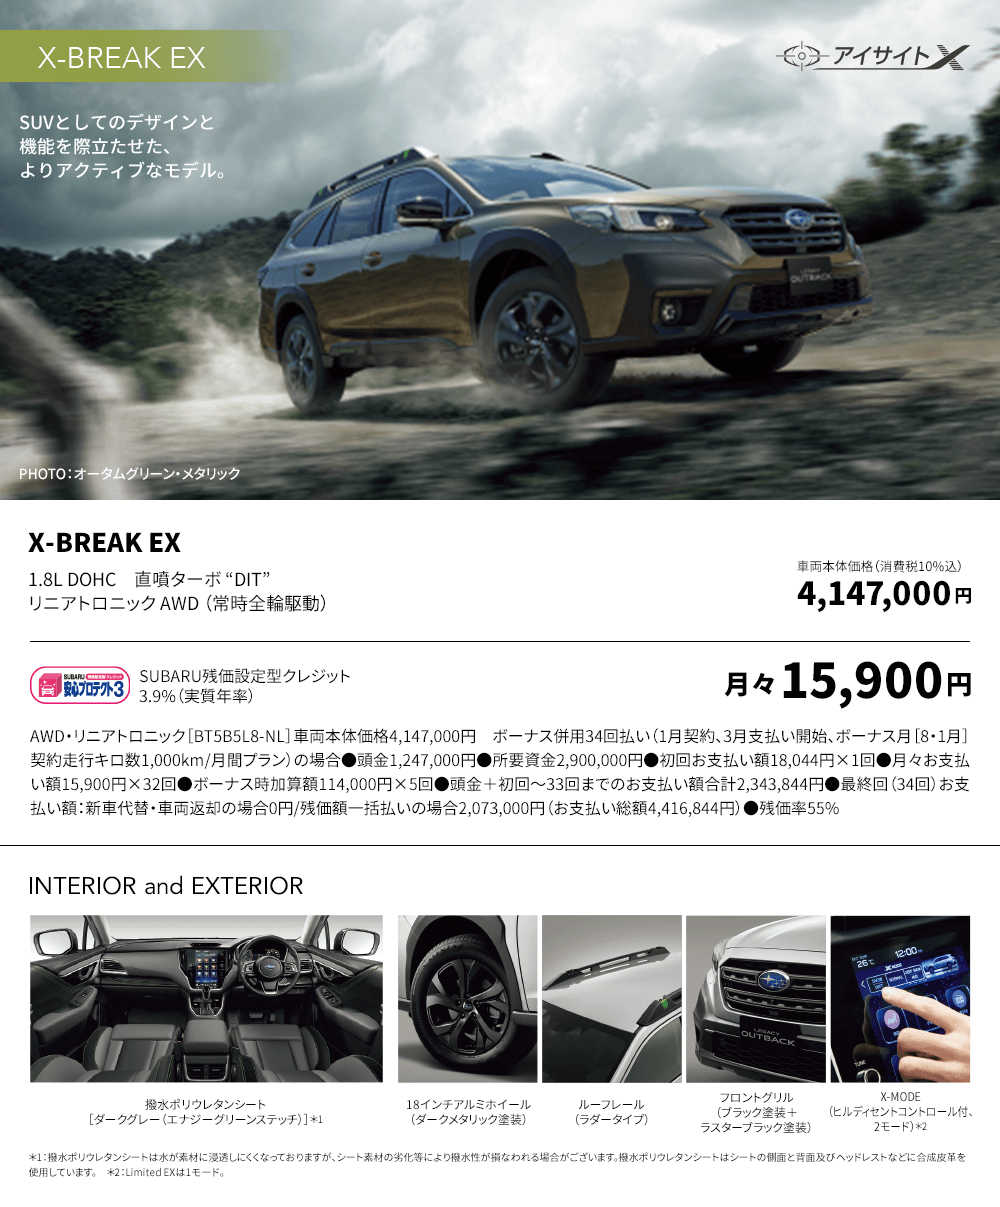 SUVとしてのデザインと機能を際立たせた、よりアクティブなモデル。X-BREAK EX 1.8L DOHC　直噴ターボ “DIT” リニアトロニック AWD （常時全輪駆動）車両本体価格（消費税10%込）4,147,000円